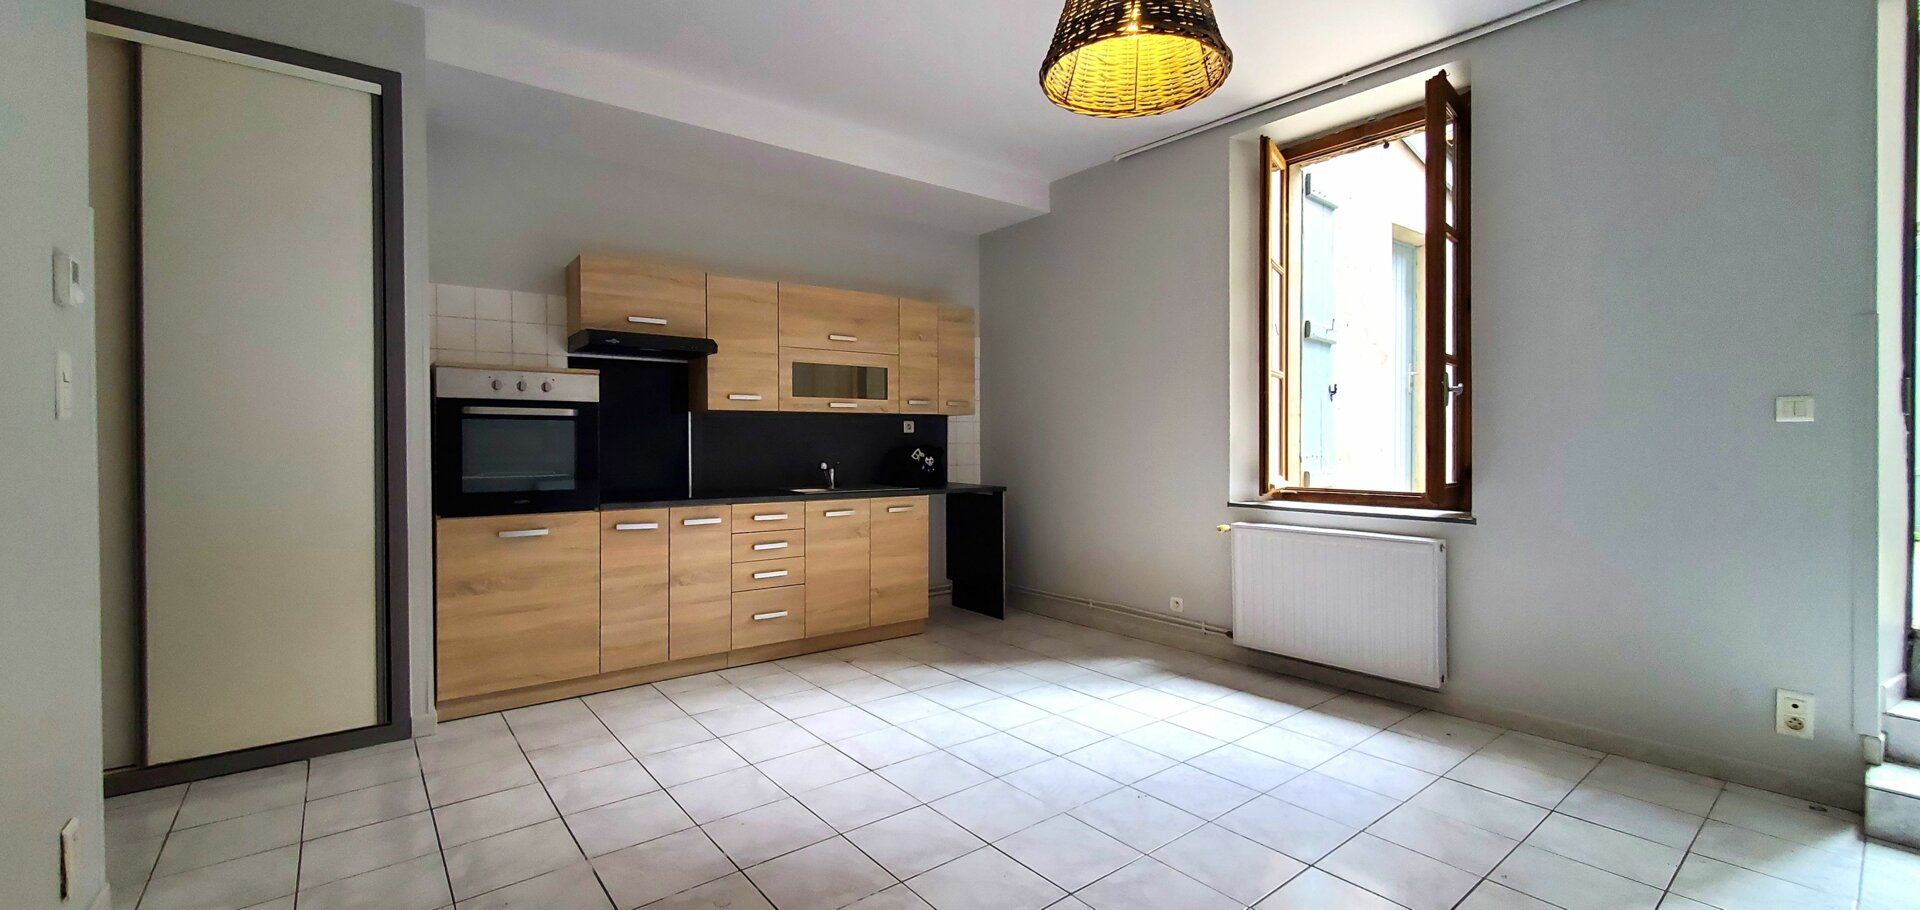 Appartement à louer 2 51m2 à Villemur-sur-Tarn vignette-1